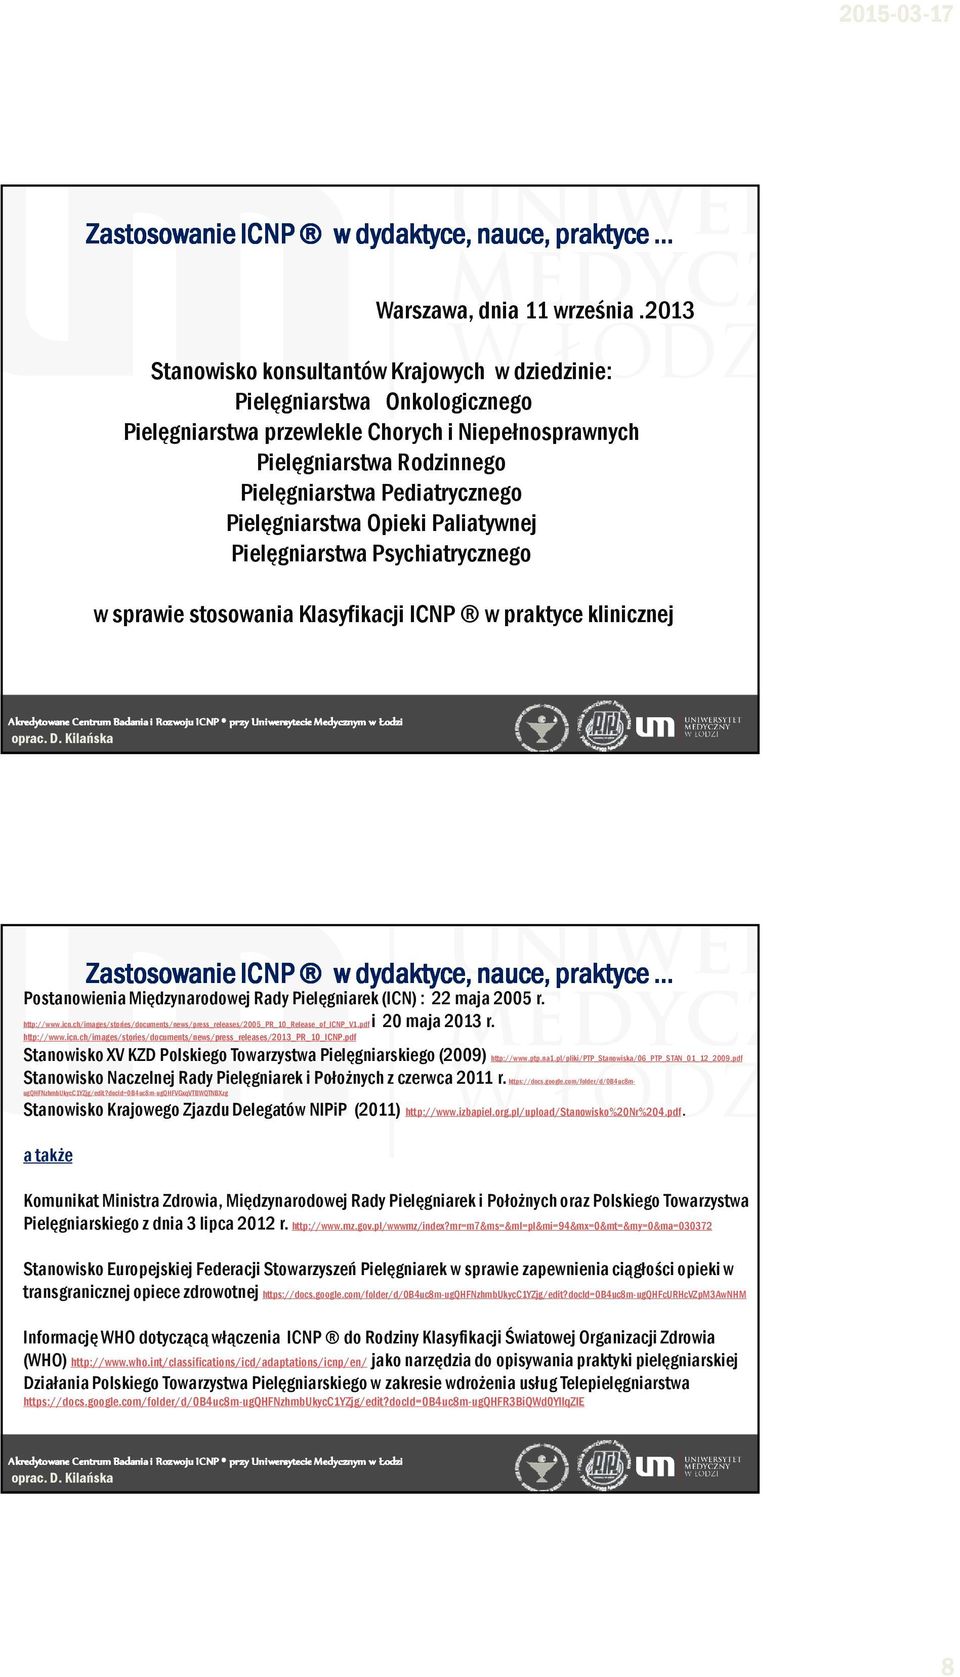 Pielęgniarstwa Opieki Paliatywnej Pielęgniarstwa Psychiatrycznego w sprawie stosowania Klasyfikacji ICNP w praktyce klinicznej Postanowienia Międzynarodowej Rady Pielęgniarek (ICN) : 22 maja 2005 r.